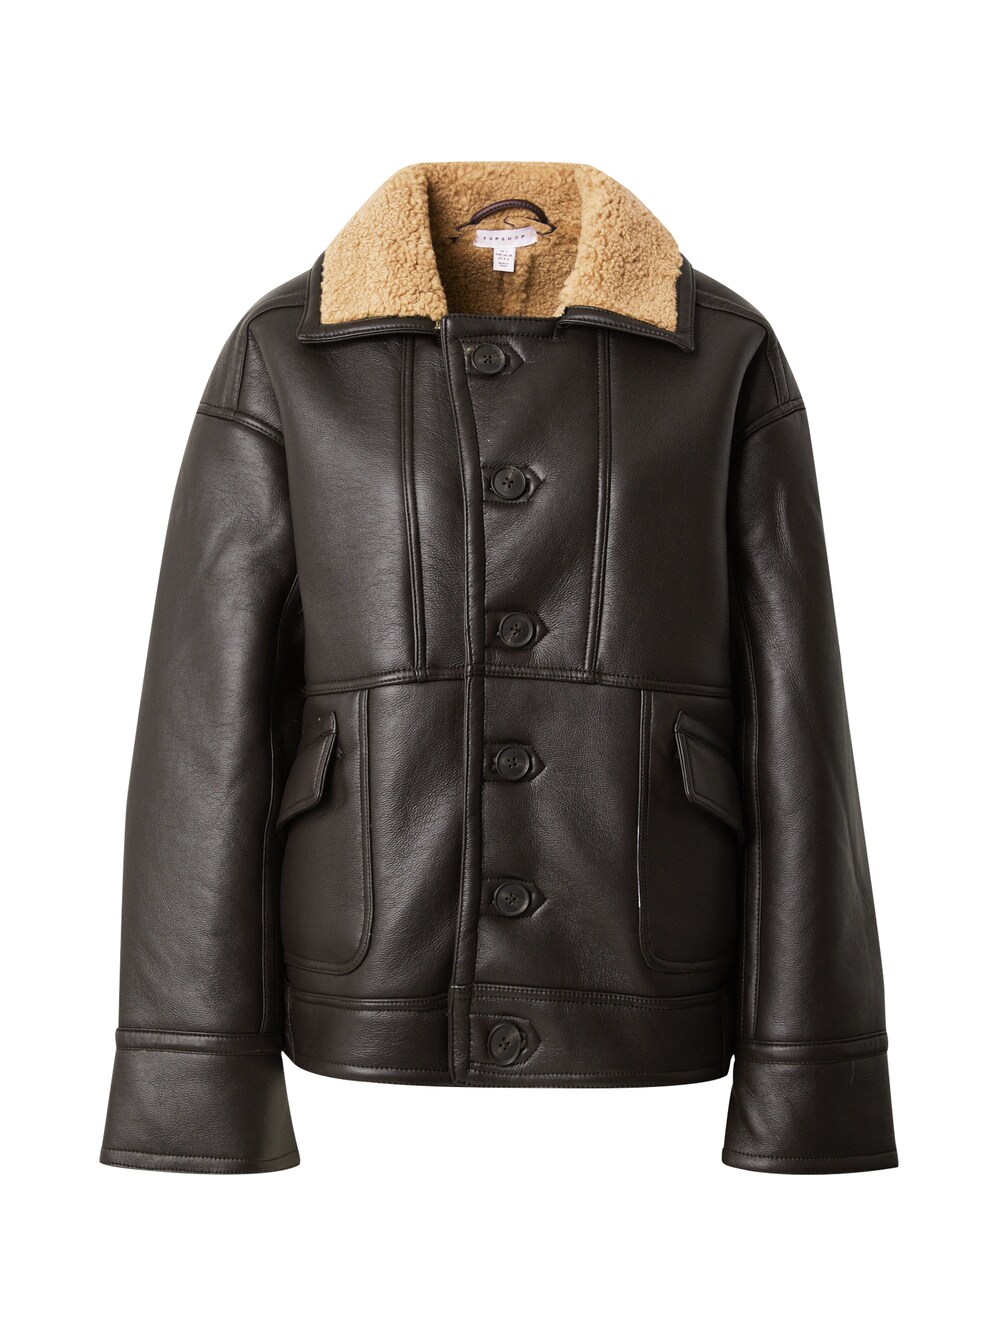 Межсезонная куртка Topshop, коричневый куртка topshop washed real leather коричневый